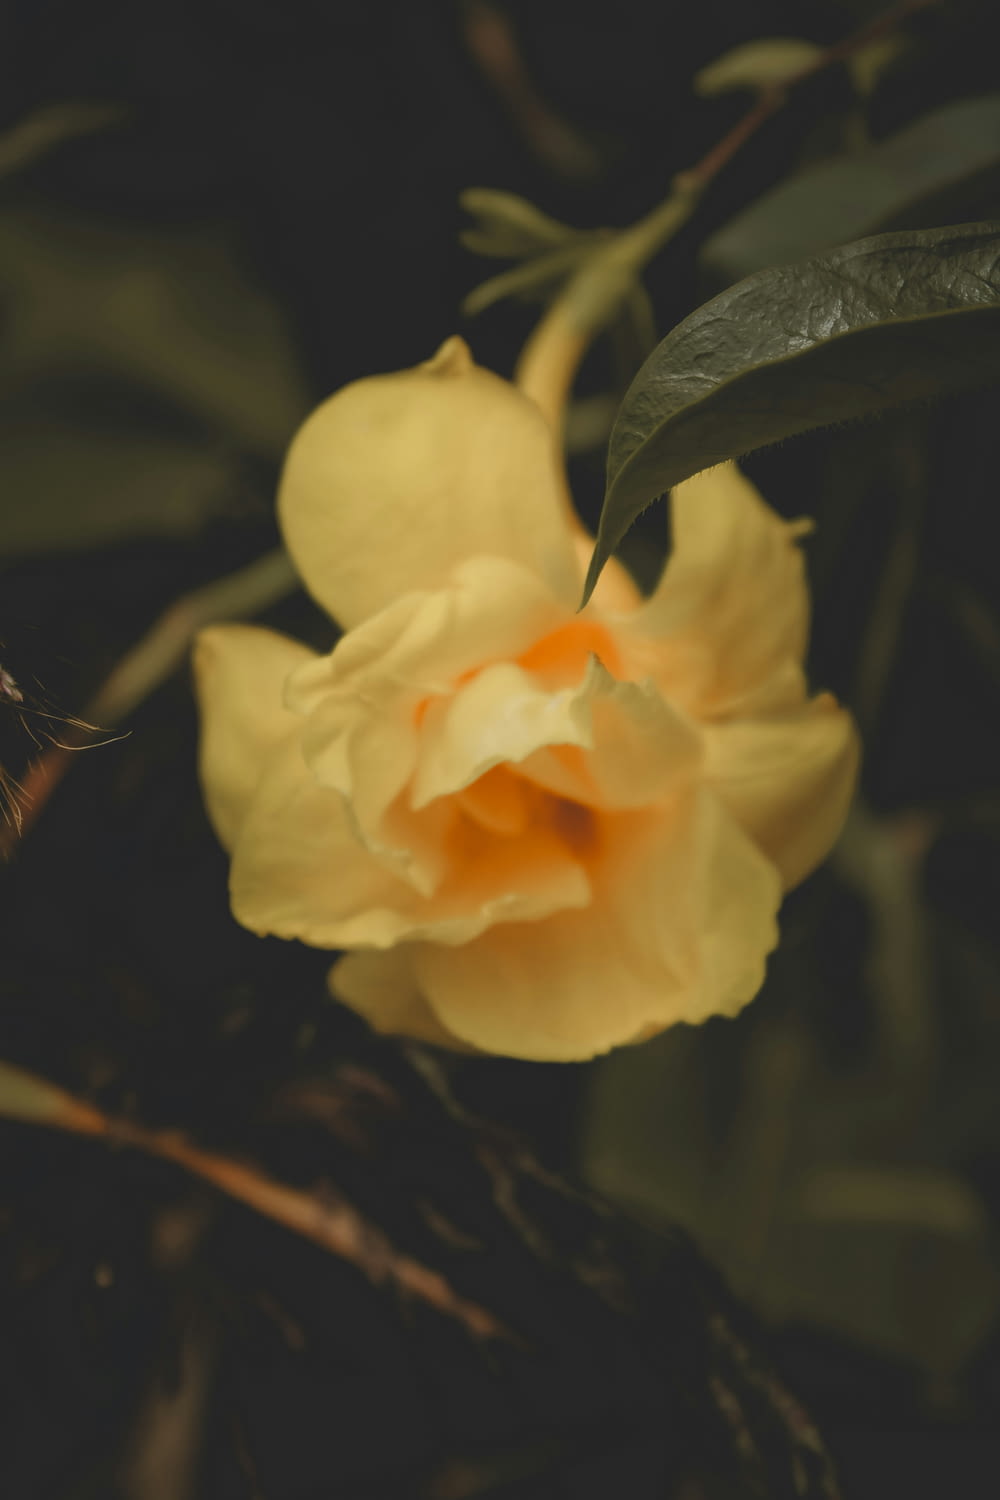 un fiore giallo con foglie verdi sullo sfondo